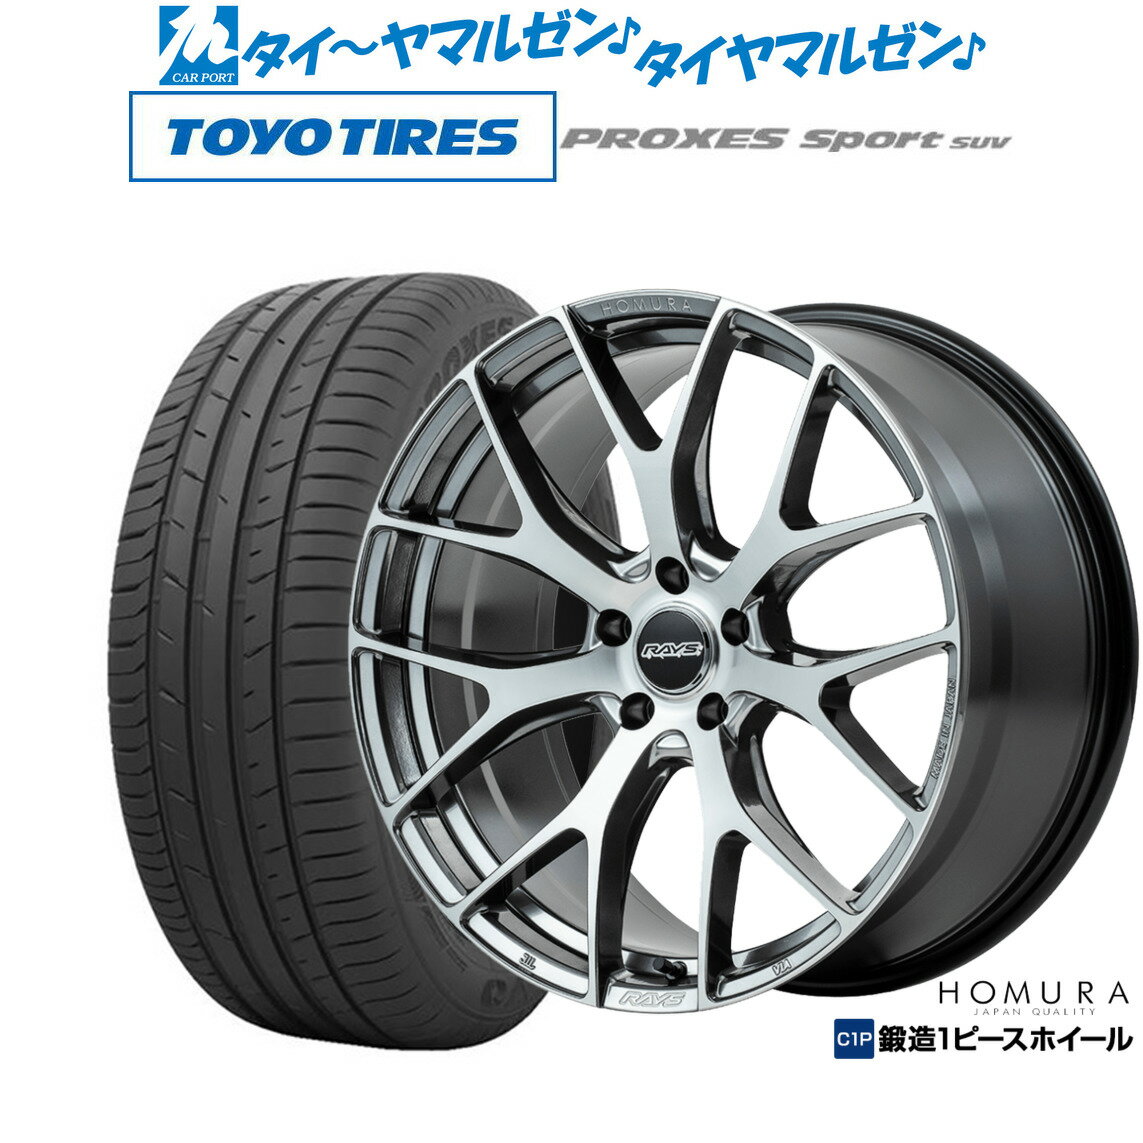 新品 サマータイヤ ホイール4本セットレイズ HOMURA ホムラ 2×7 FT19インチ 8.5Jトーヨータイヤ プロクセス PROXES スポーツ SUV 225/55R19